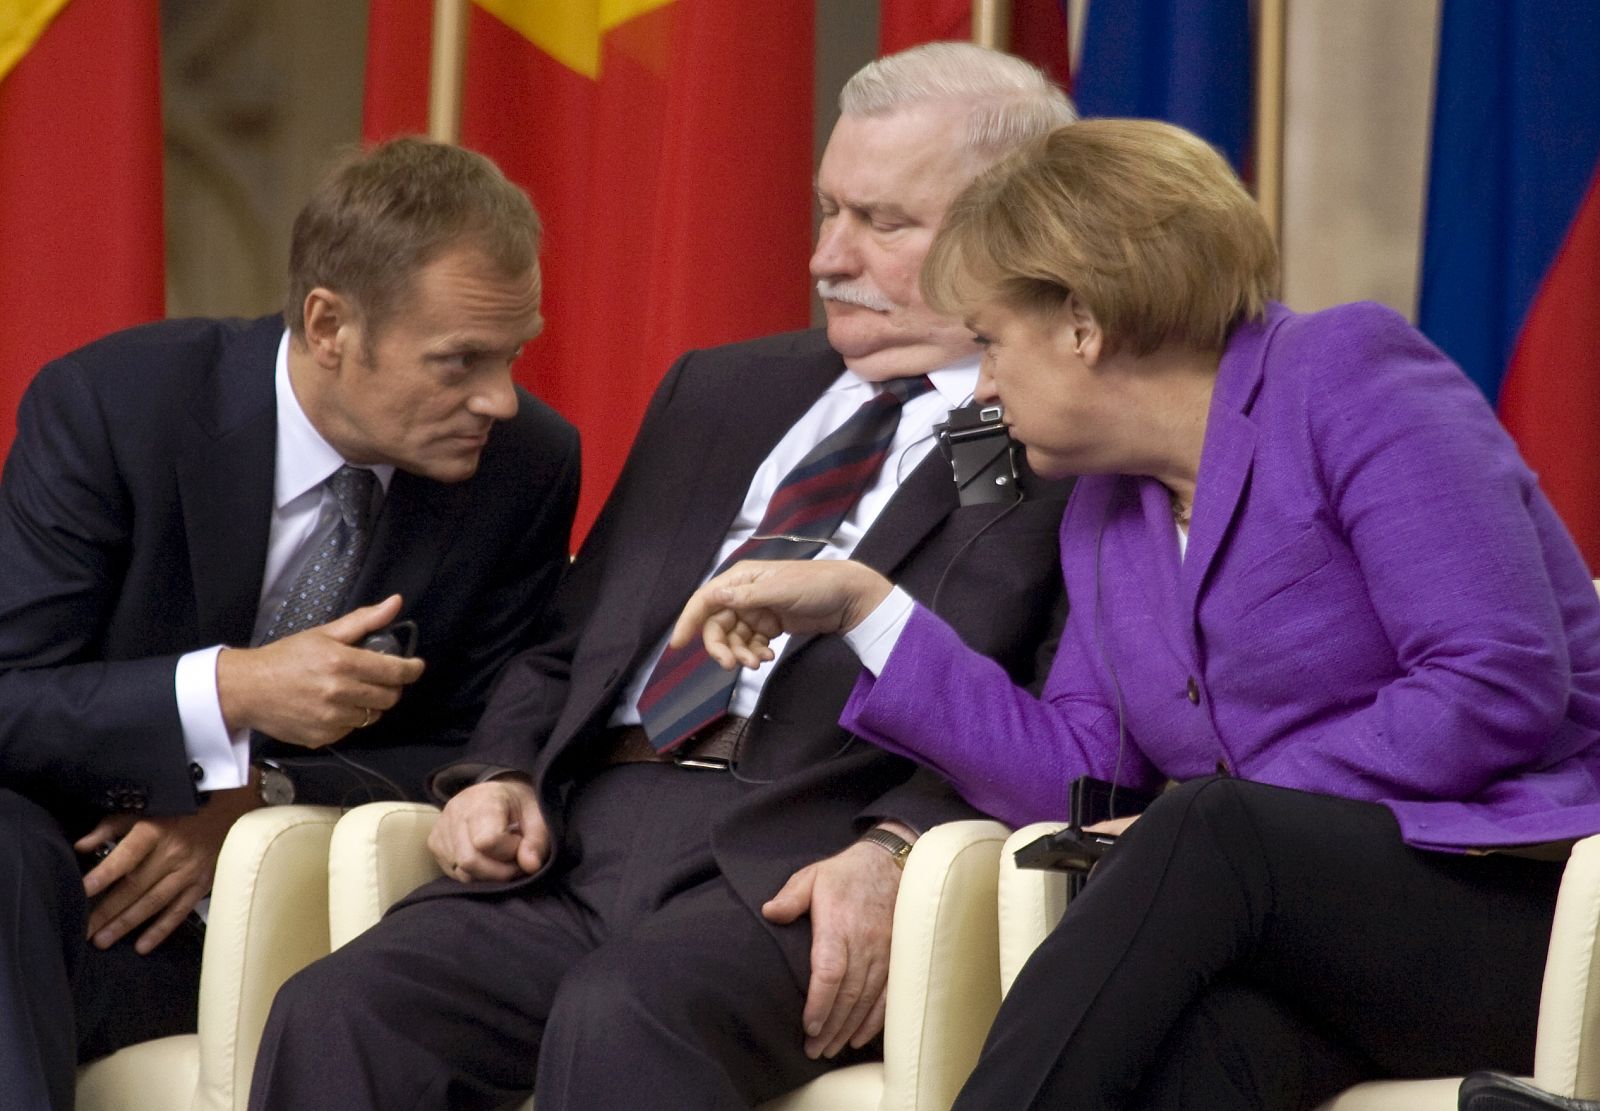 El primer ministro polaco, Donald Tusk, charla con la canciller alemana, Angela Merkel, mientras el ex presidente y sindicalista Lech Walesa escucha entre ambos.